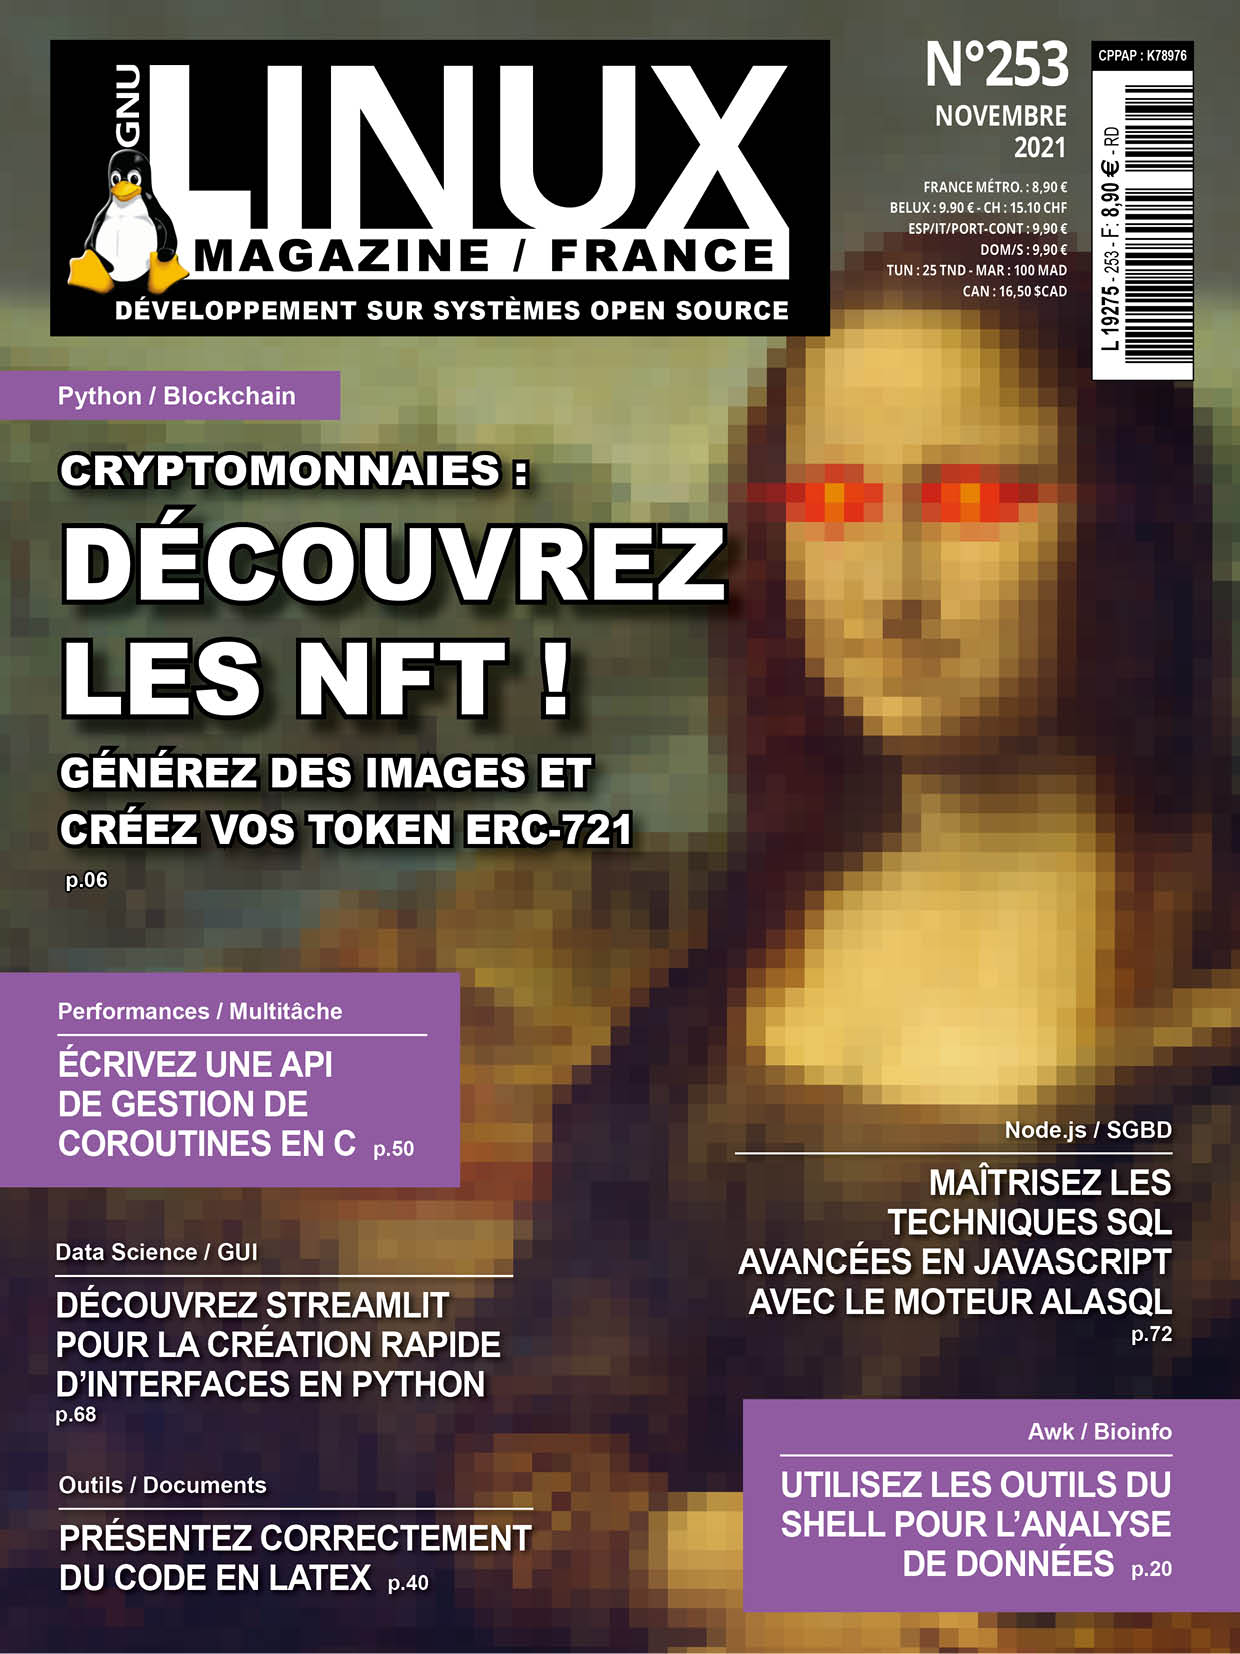 Cryptomonnaies : découvrez les NFT ! 